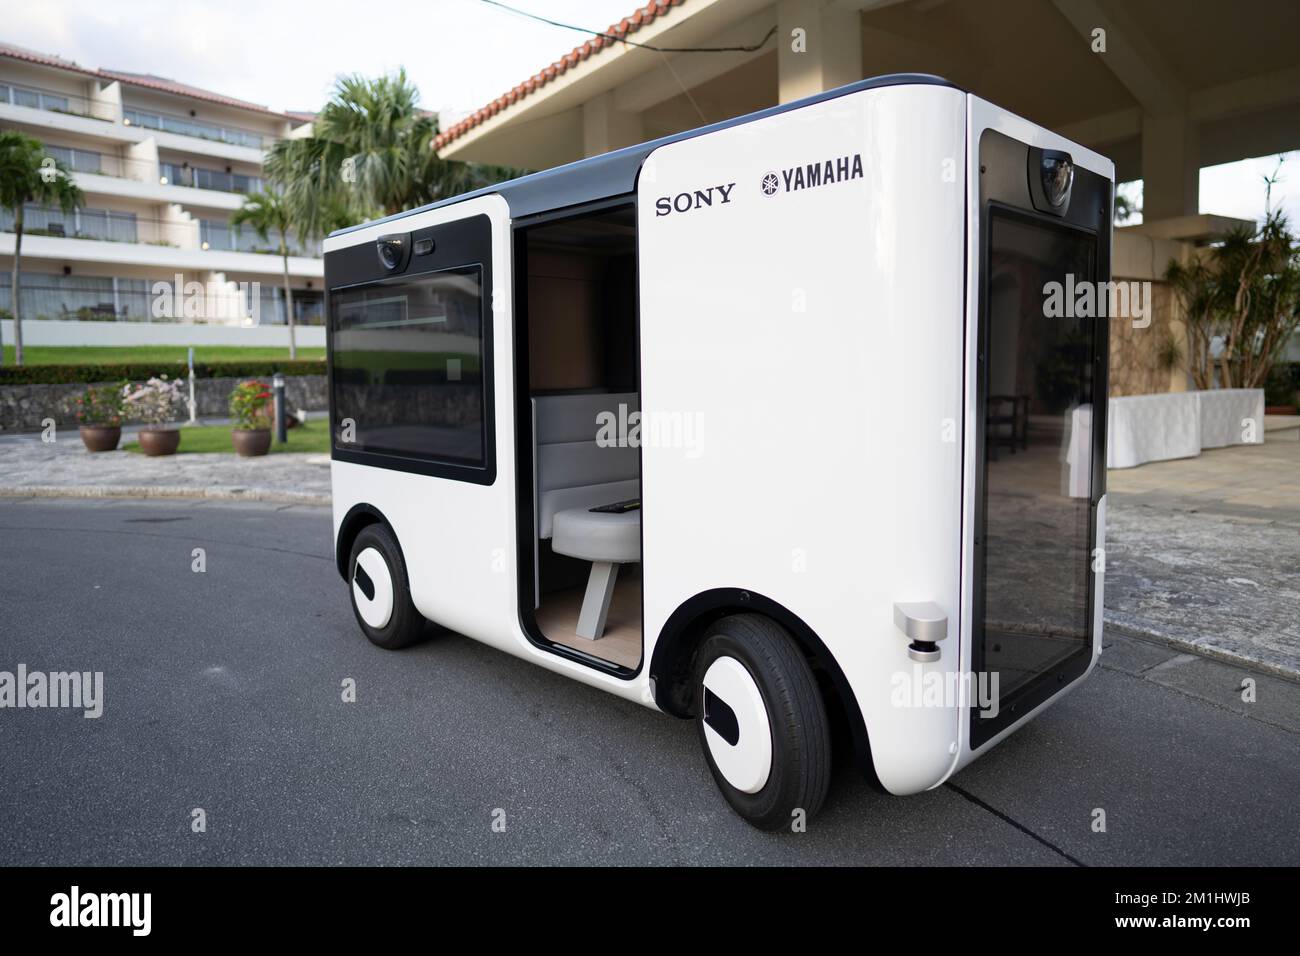 Sony and Yamaha's Sociable Cart SC-1 self-driving box at Kanucha Resort Okinawa, 7th October 2022 Stock Photo